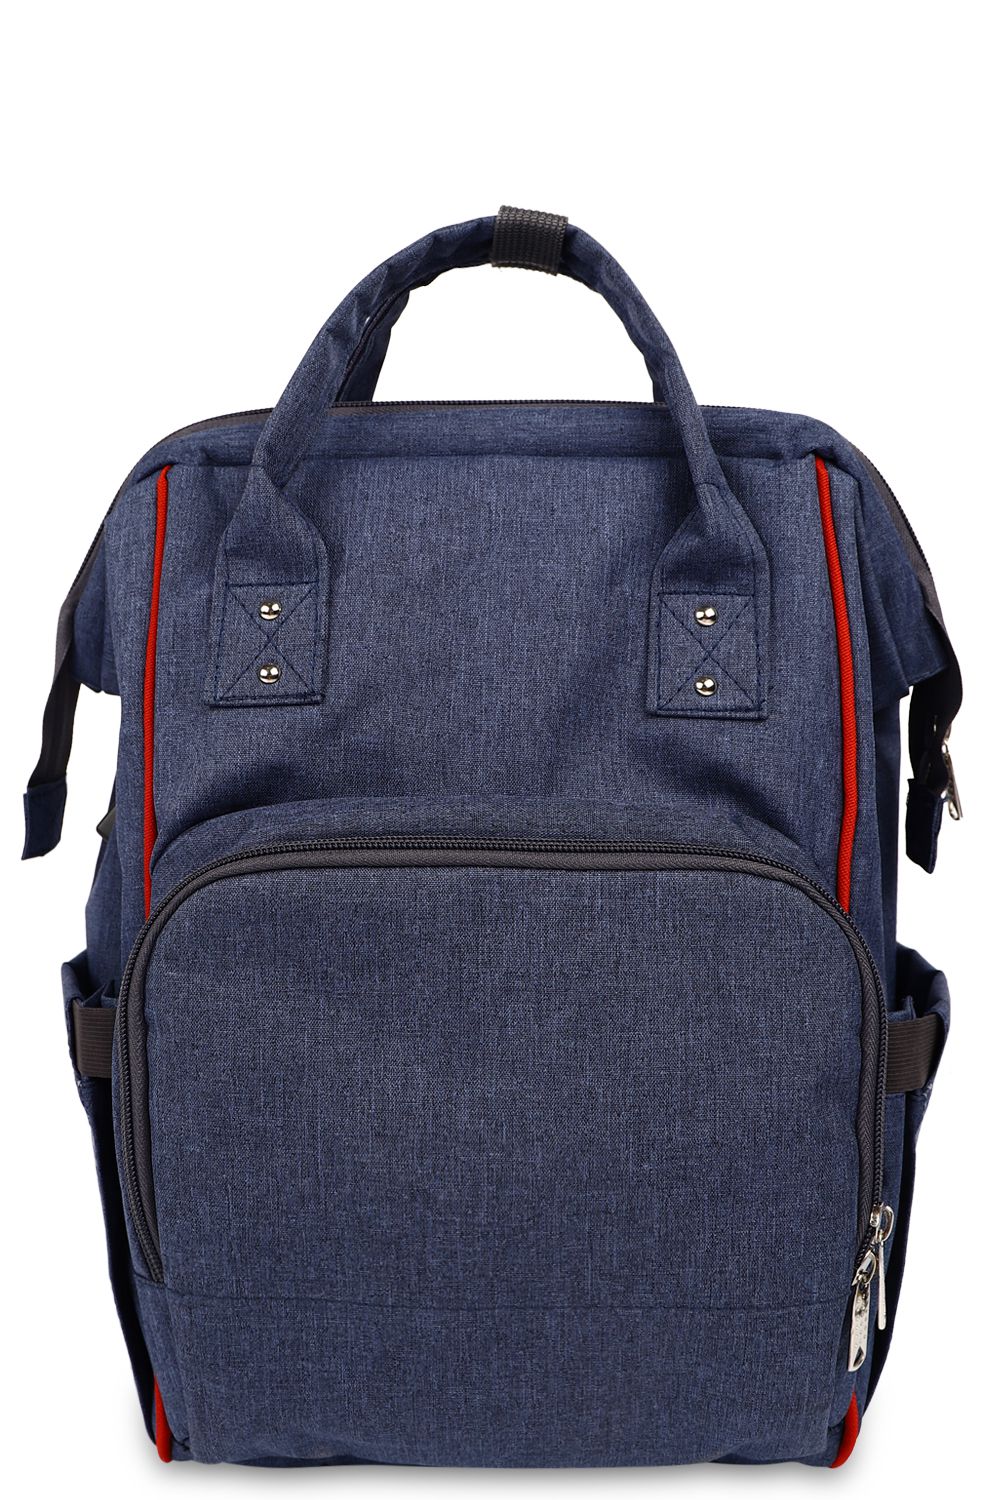 Рюкзак BagRio, размер UNI, цвет синий SM20/2-blue - фото 1